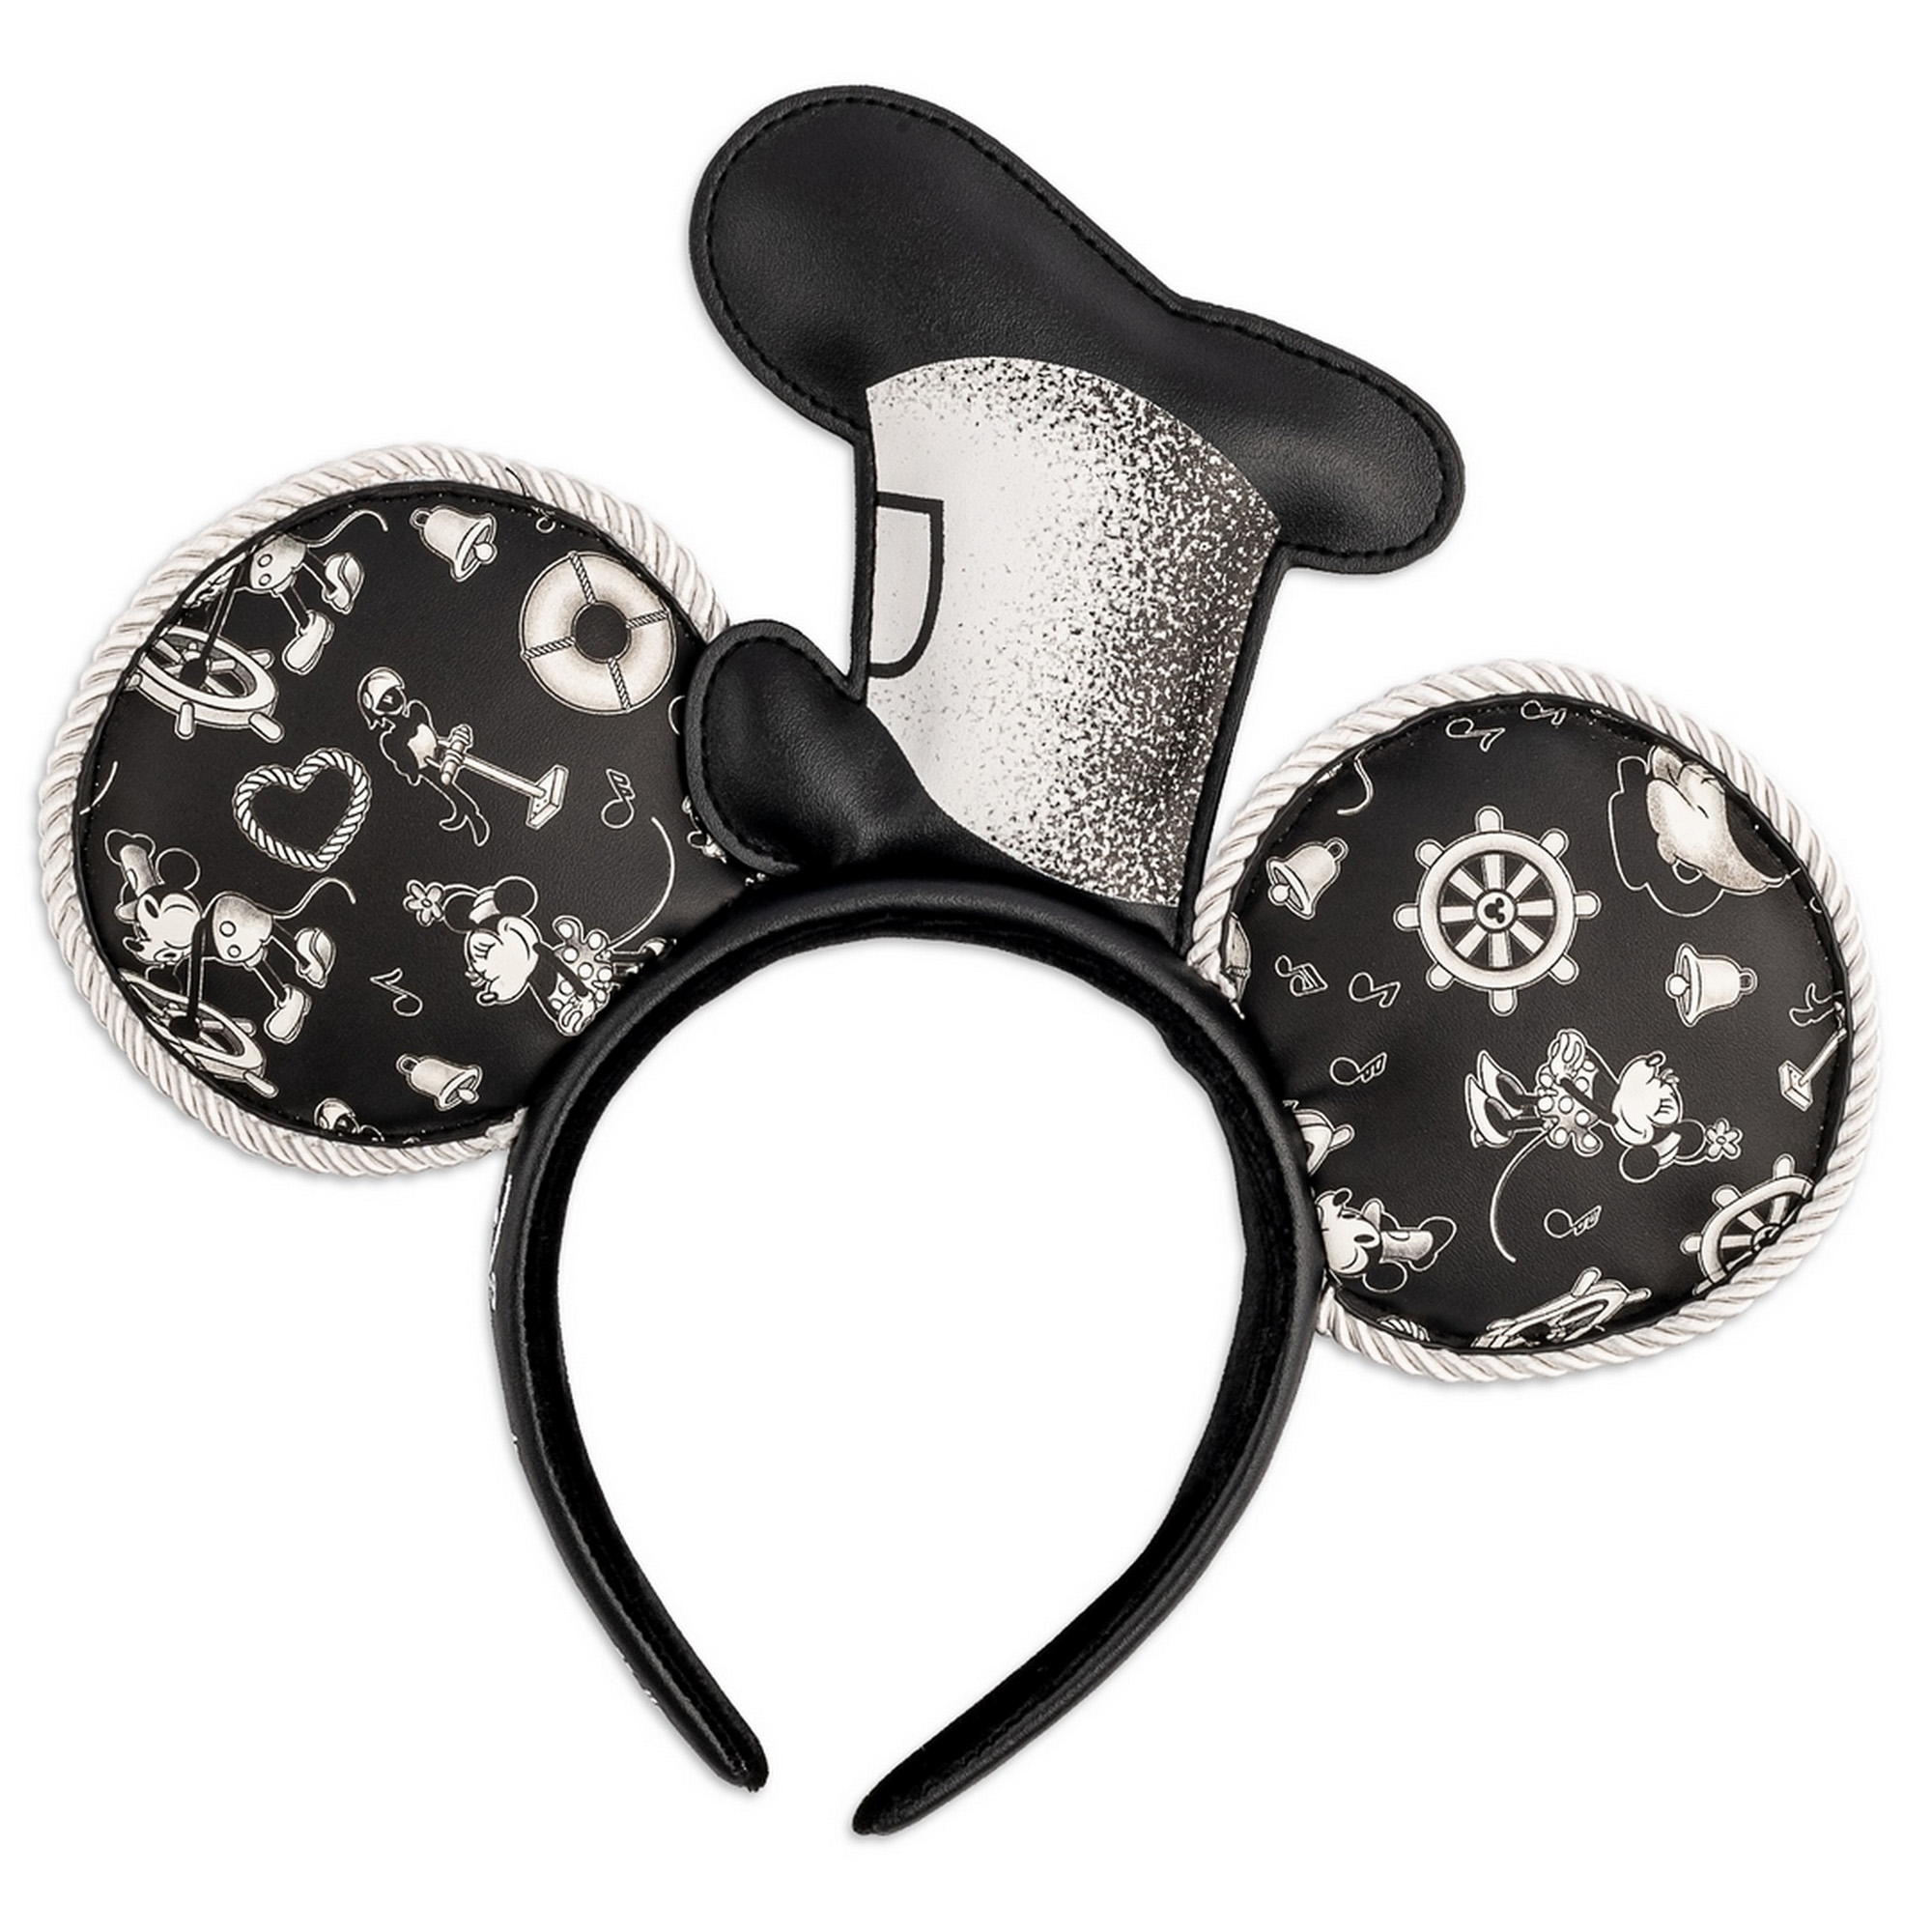 Cerchietto con orecchie di Topolino Steamboat Willie - Disney